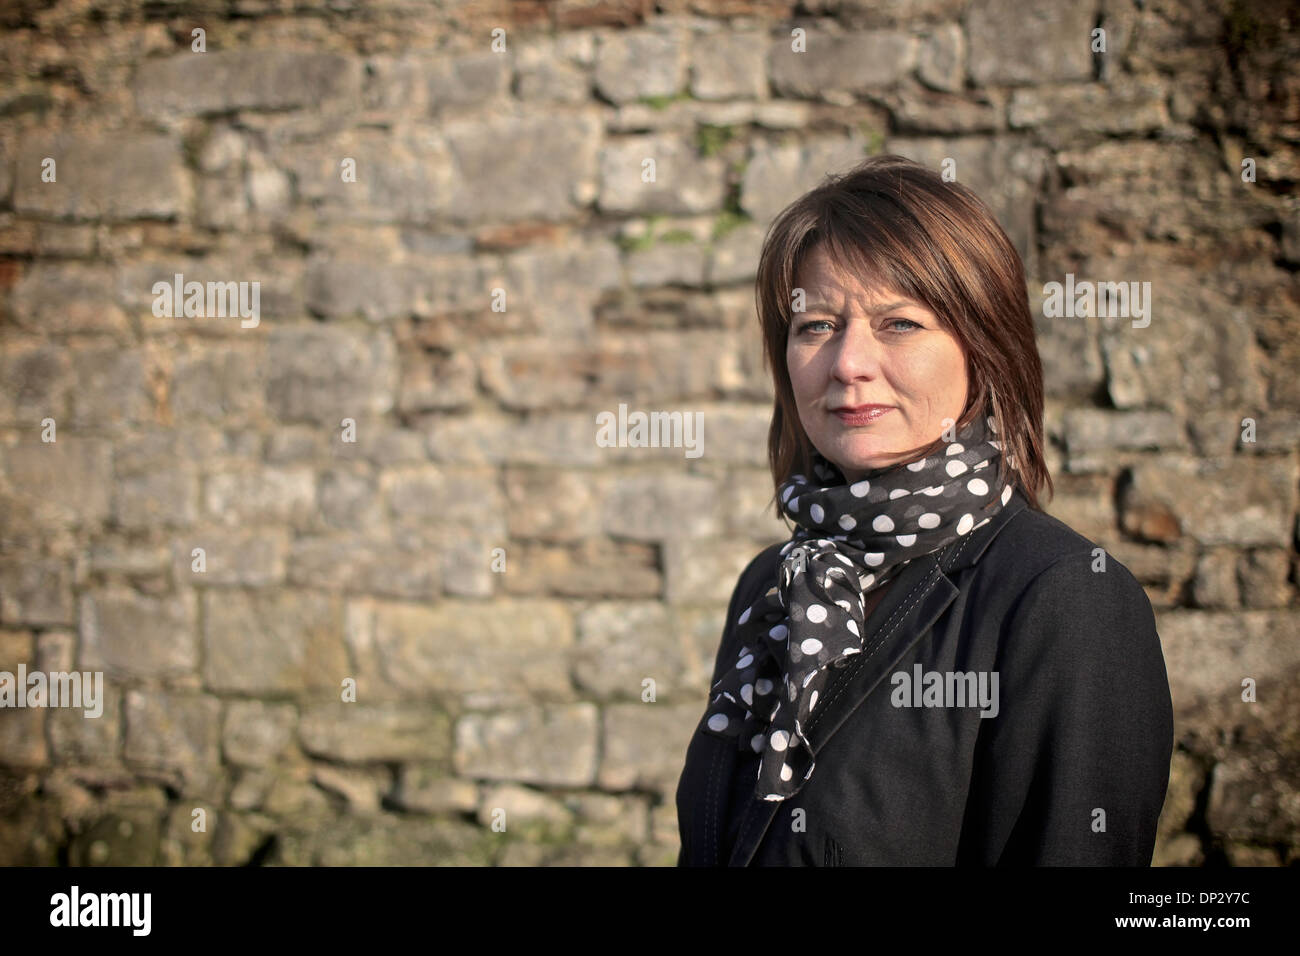 Leanne madera AM, el Plaid Cymru / el líder de partido de Gales Foto de stock